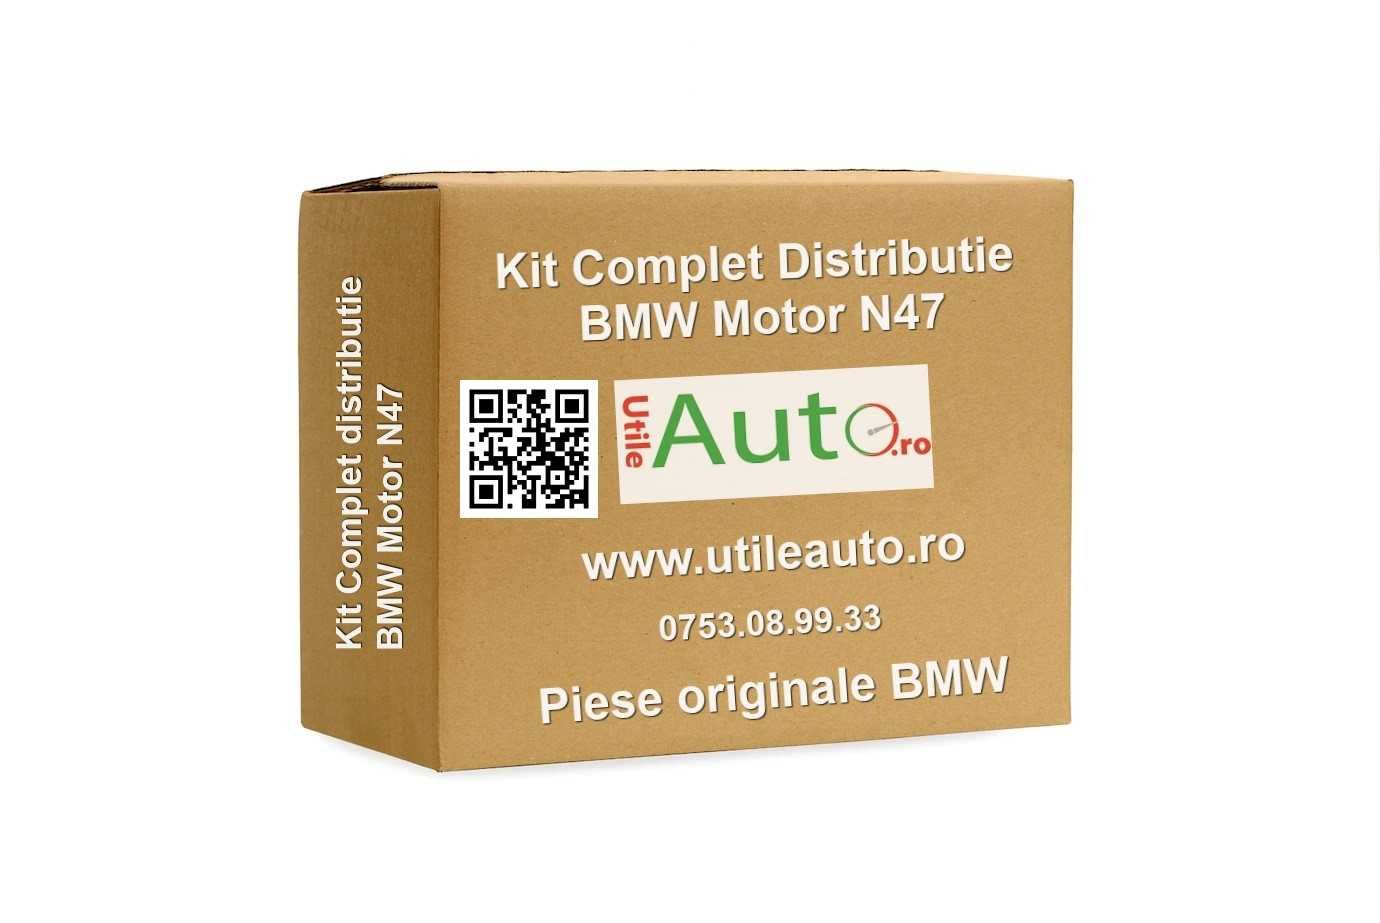 Kit Complet Distributie OE BMW Motor N47